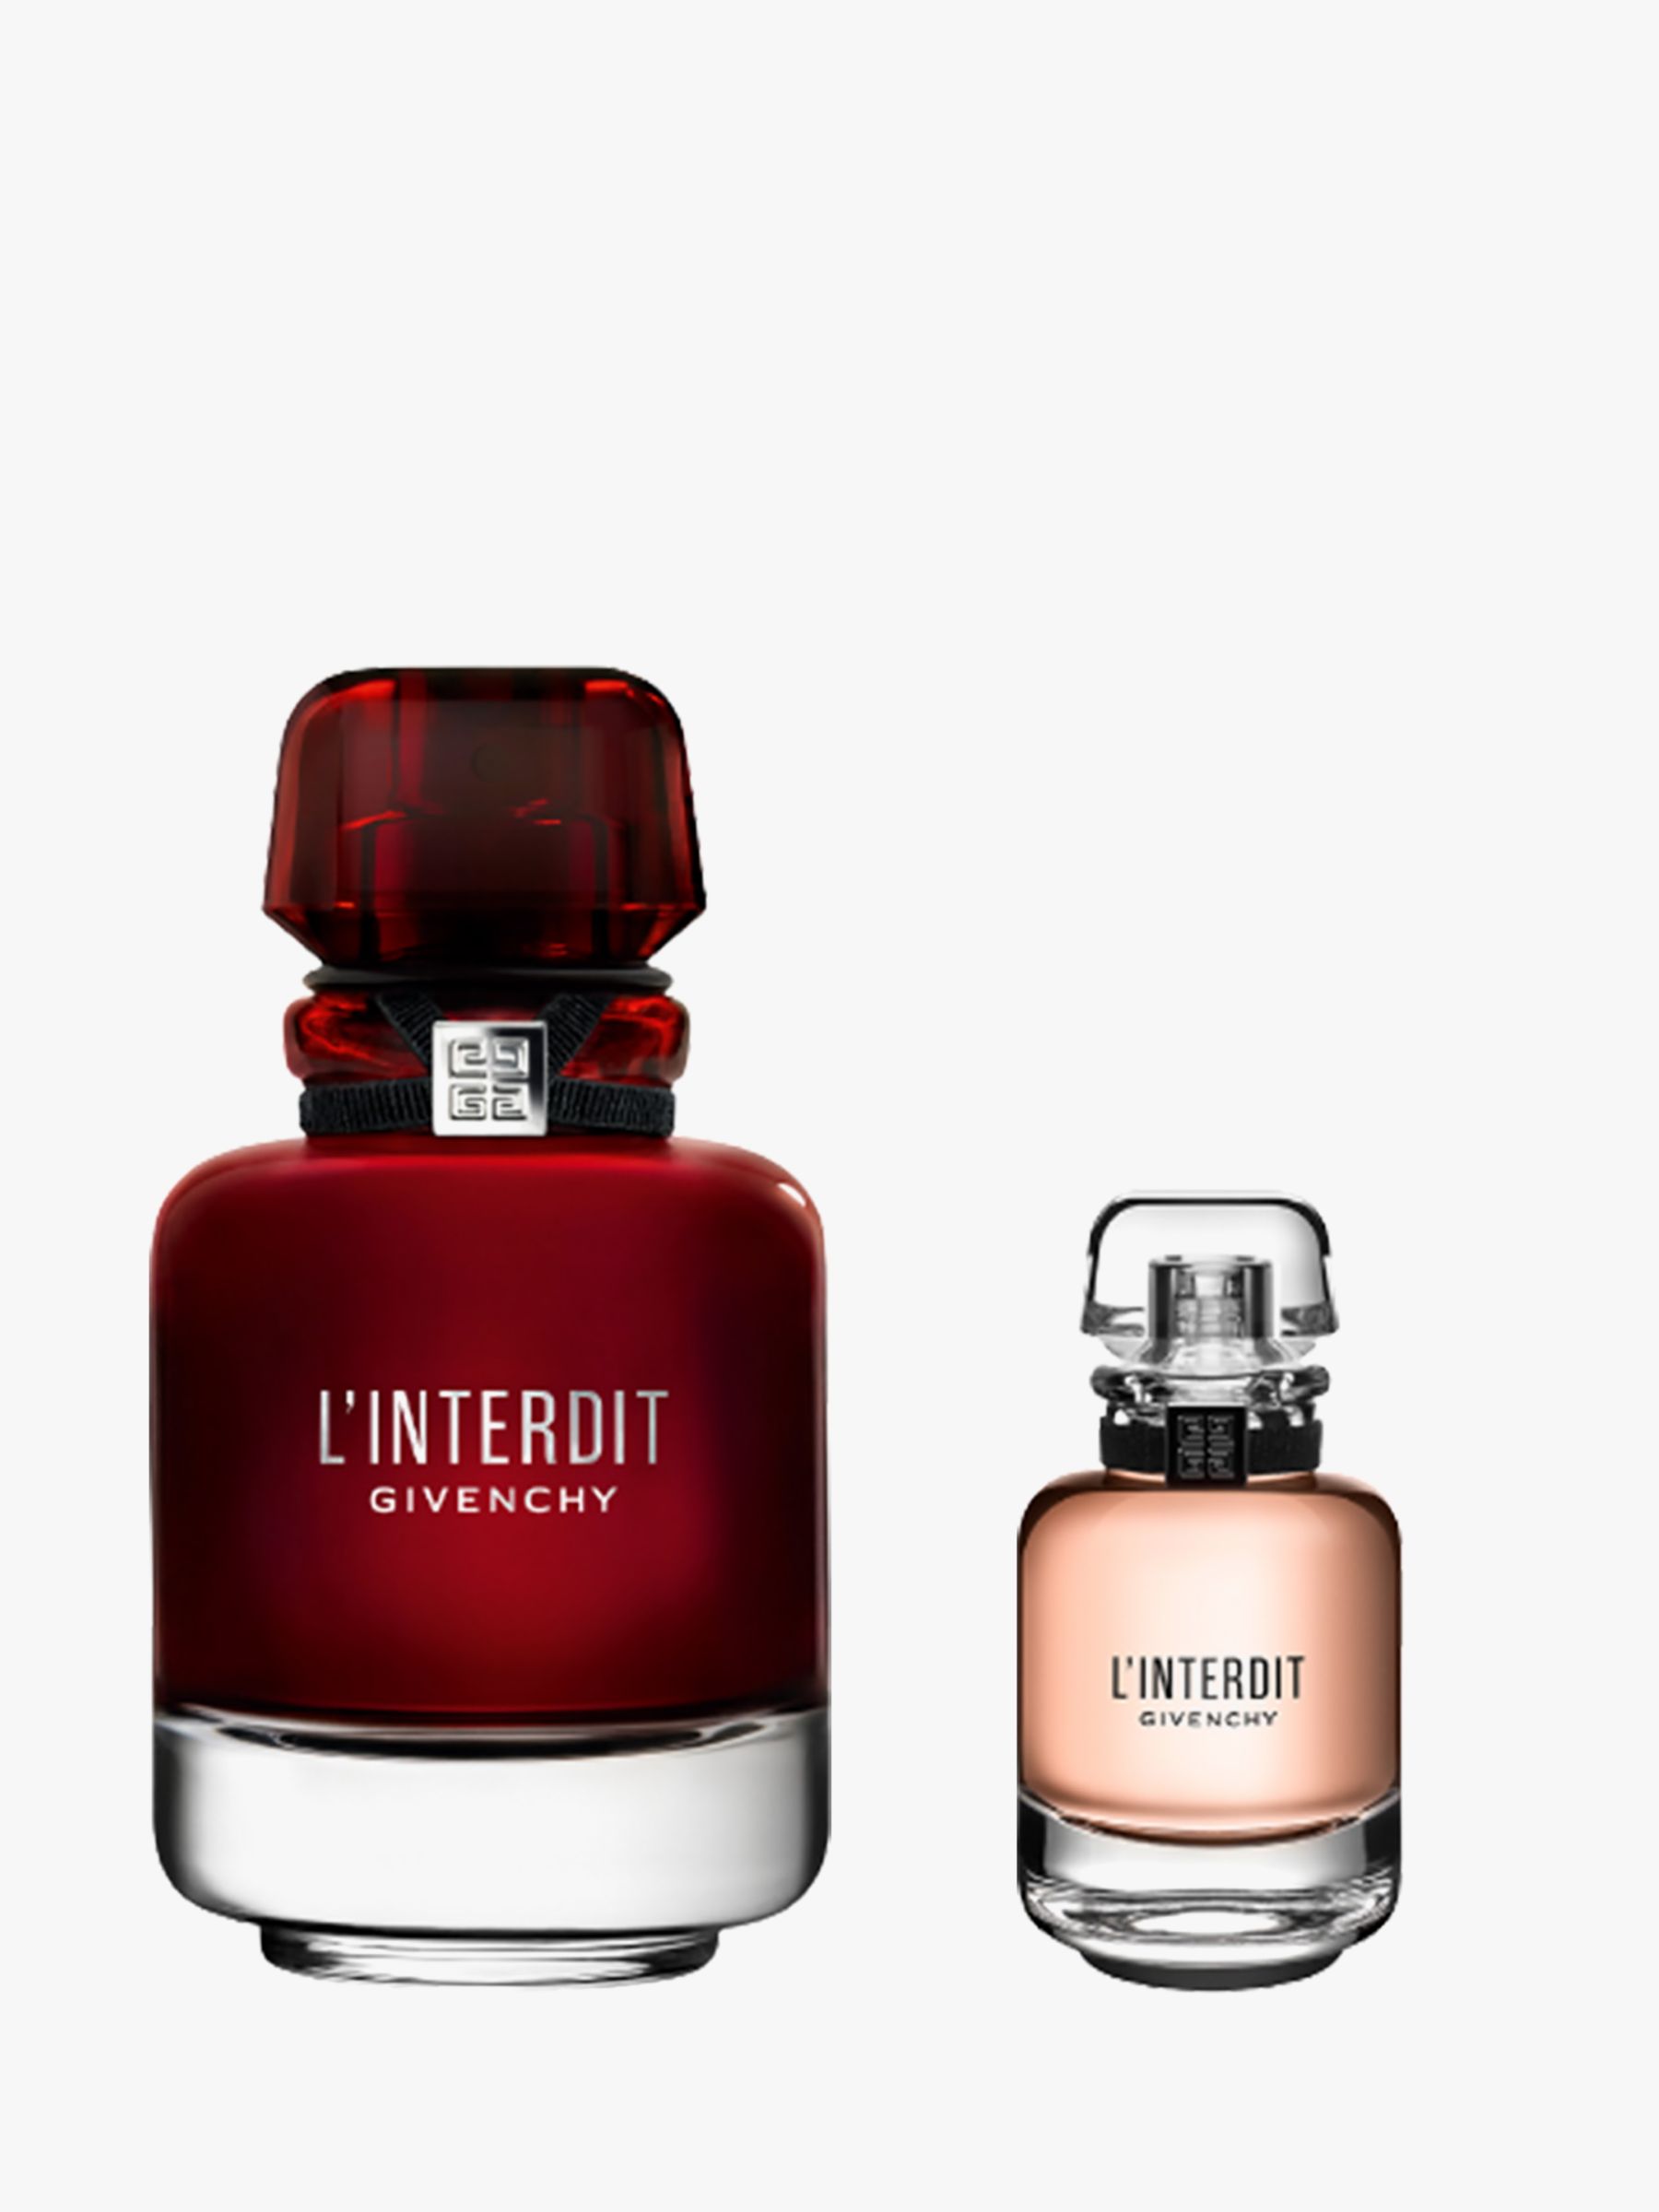 Givenchy L'Interdit Eau de Parfum Rouge, 50ml Bundle with Gift